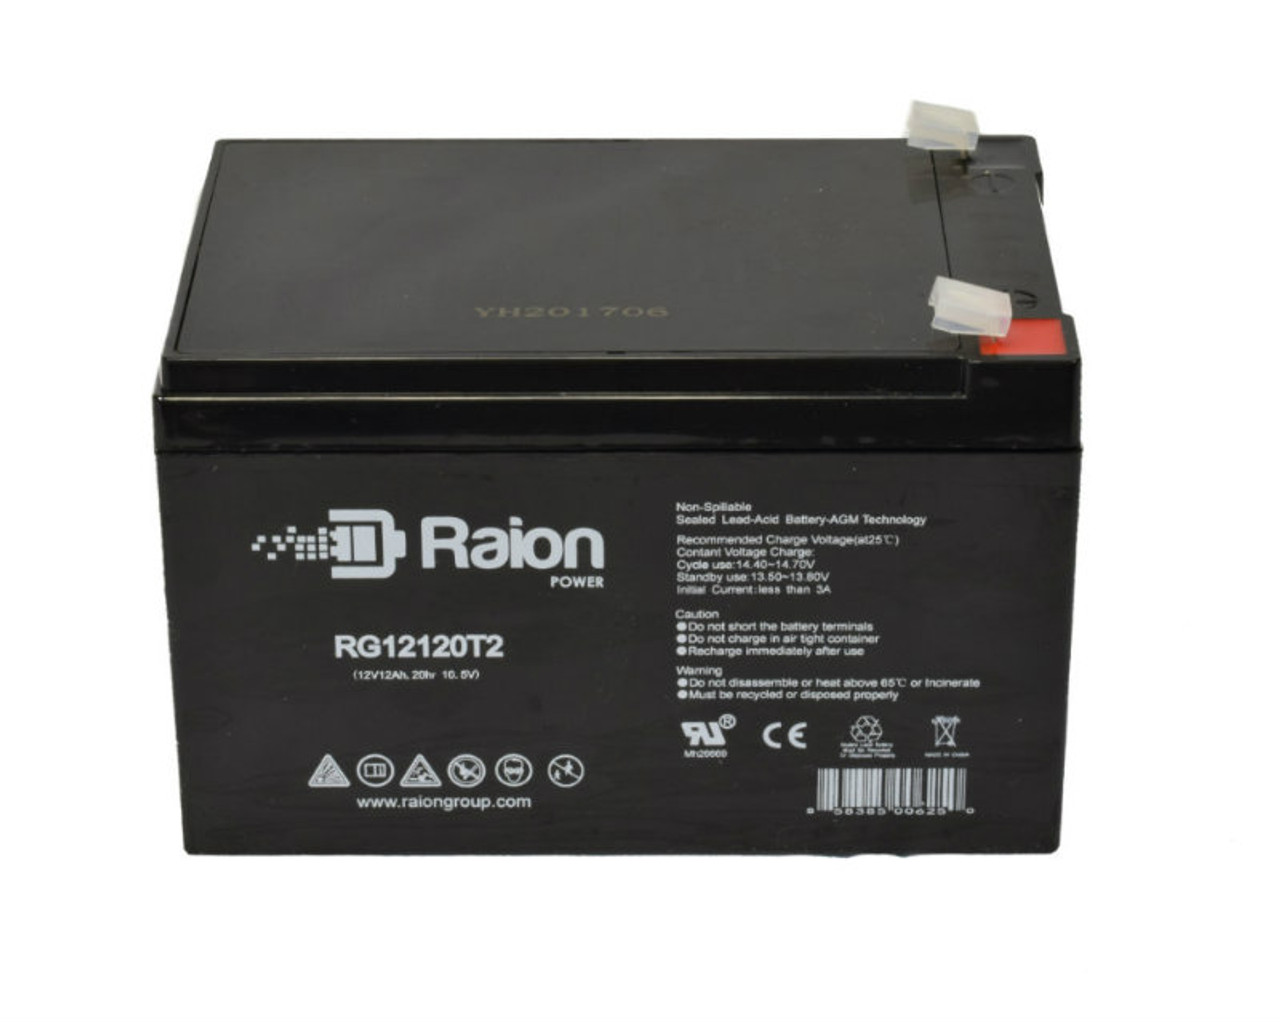 Raion Power RG12120T2 SLA Battery for KRAFT VRLA 12V12